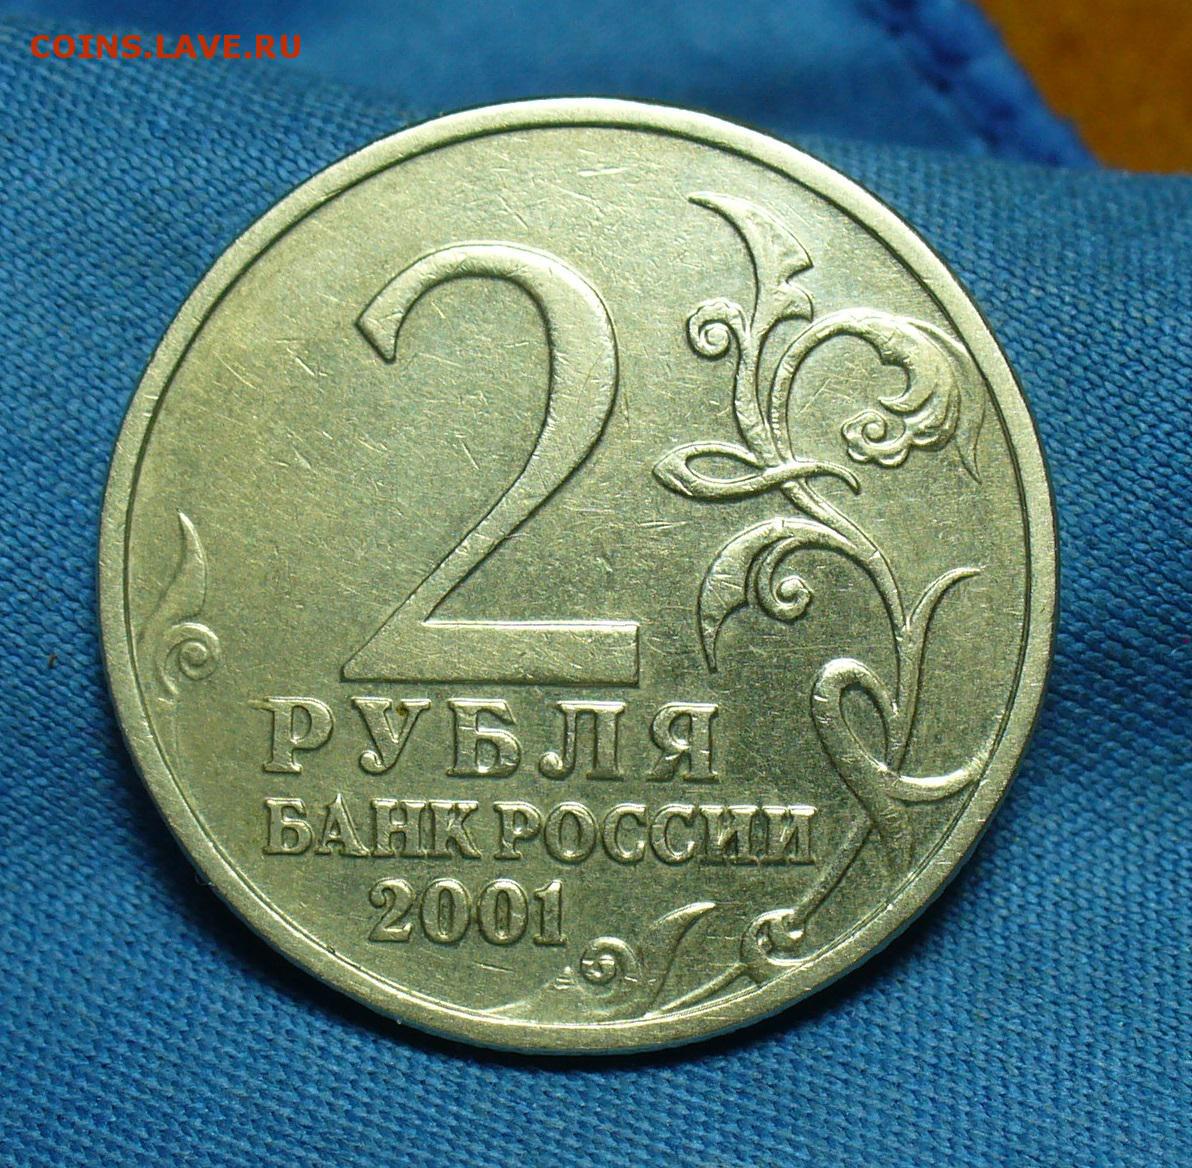 2 рубля 2001 года с гагариным. 2 Рубля 2001 года "Гагарин" без обозначения монетного двора. Монета без знака монетного двора. Гагарин без знака монетного двора.